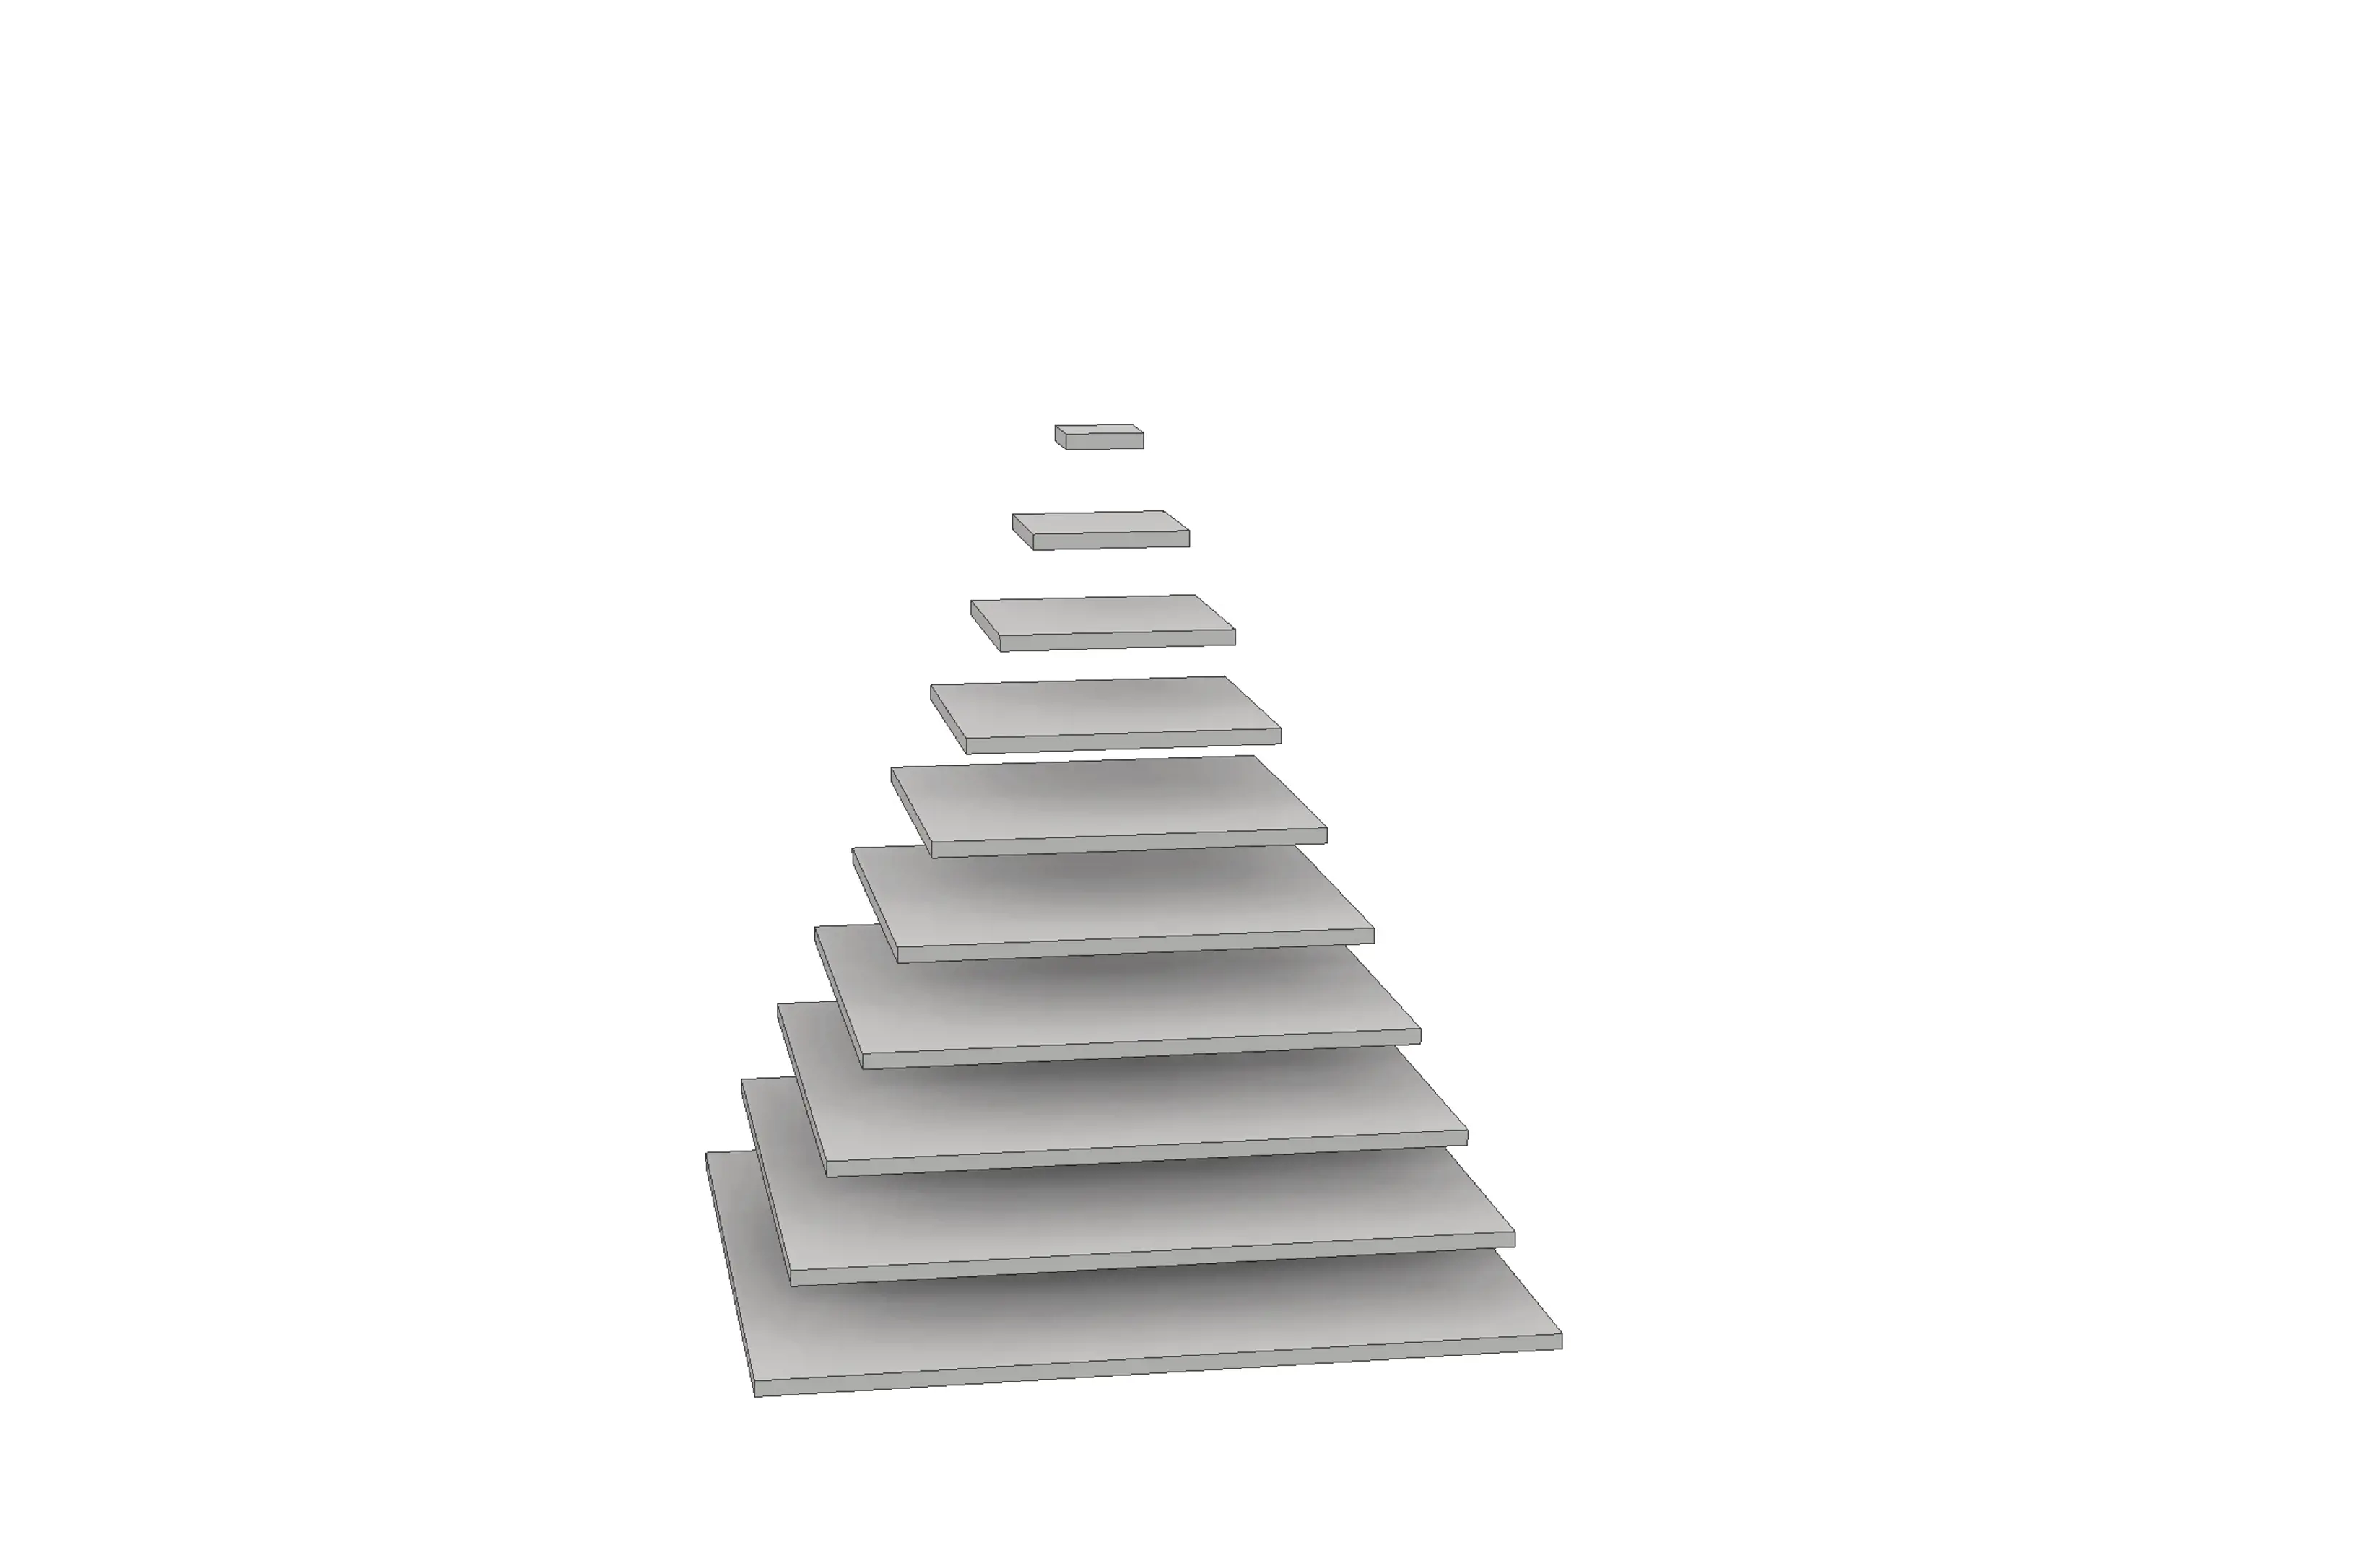 3D modell, rektangulære plater blir pyramide. Grafisk illustrasjon.